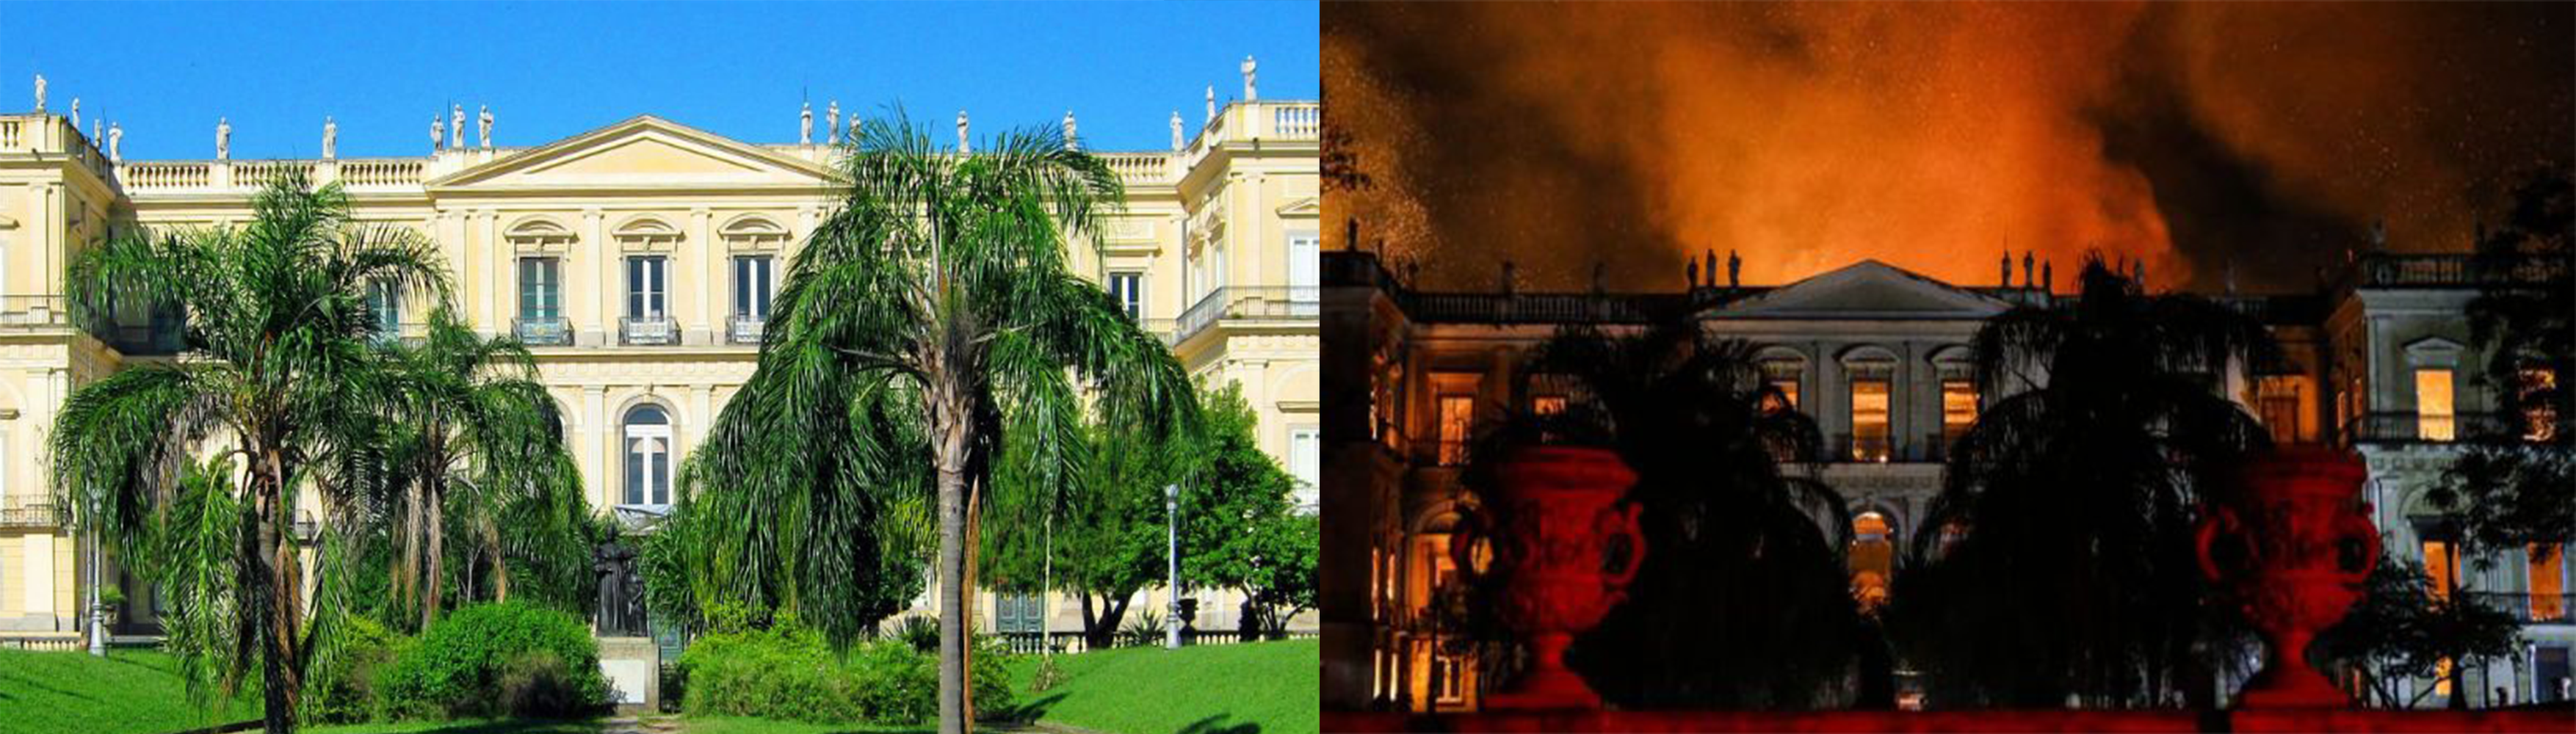 Fachada do Museu Nacional, prédio bicentenário, administrado pela Universidade Federal do Rio de Janeiro. Á direita, registro de como imóvel foi prejudicado pelo sinistro 